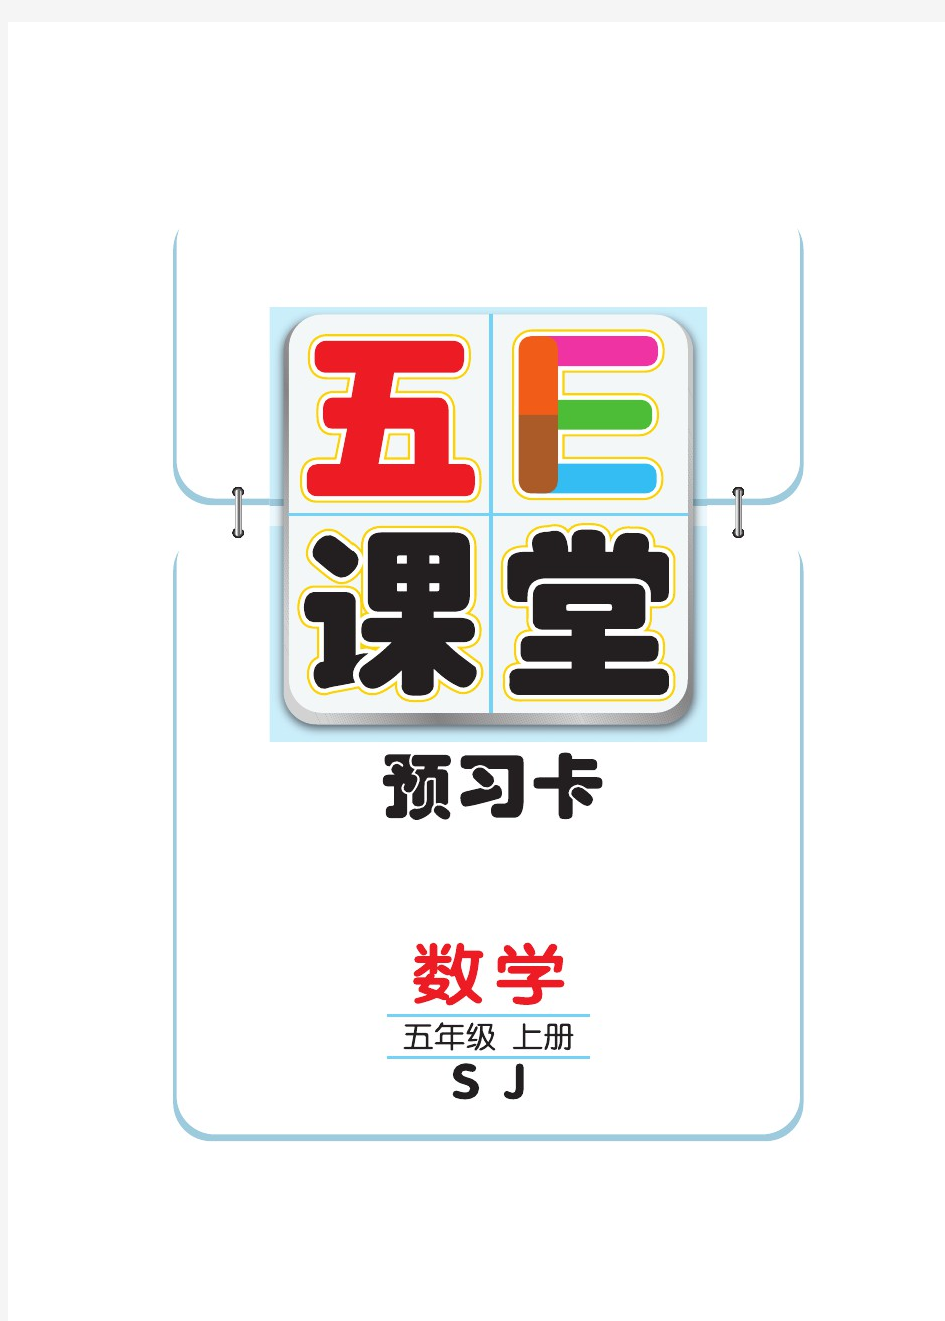 【五E课堂】苏教版五年级上册数学预习卡